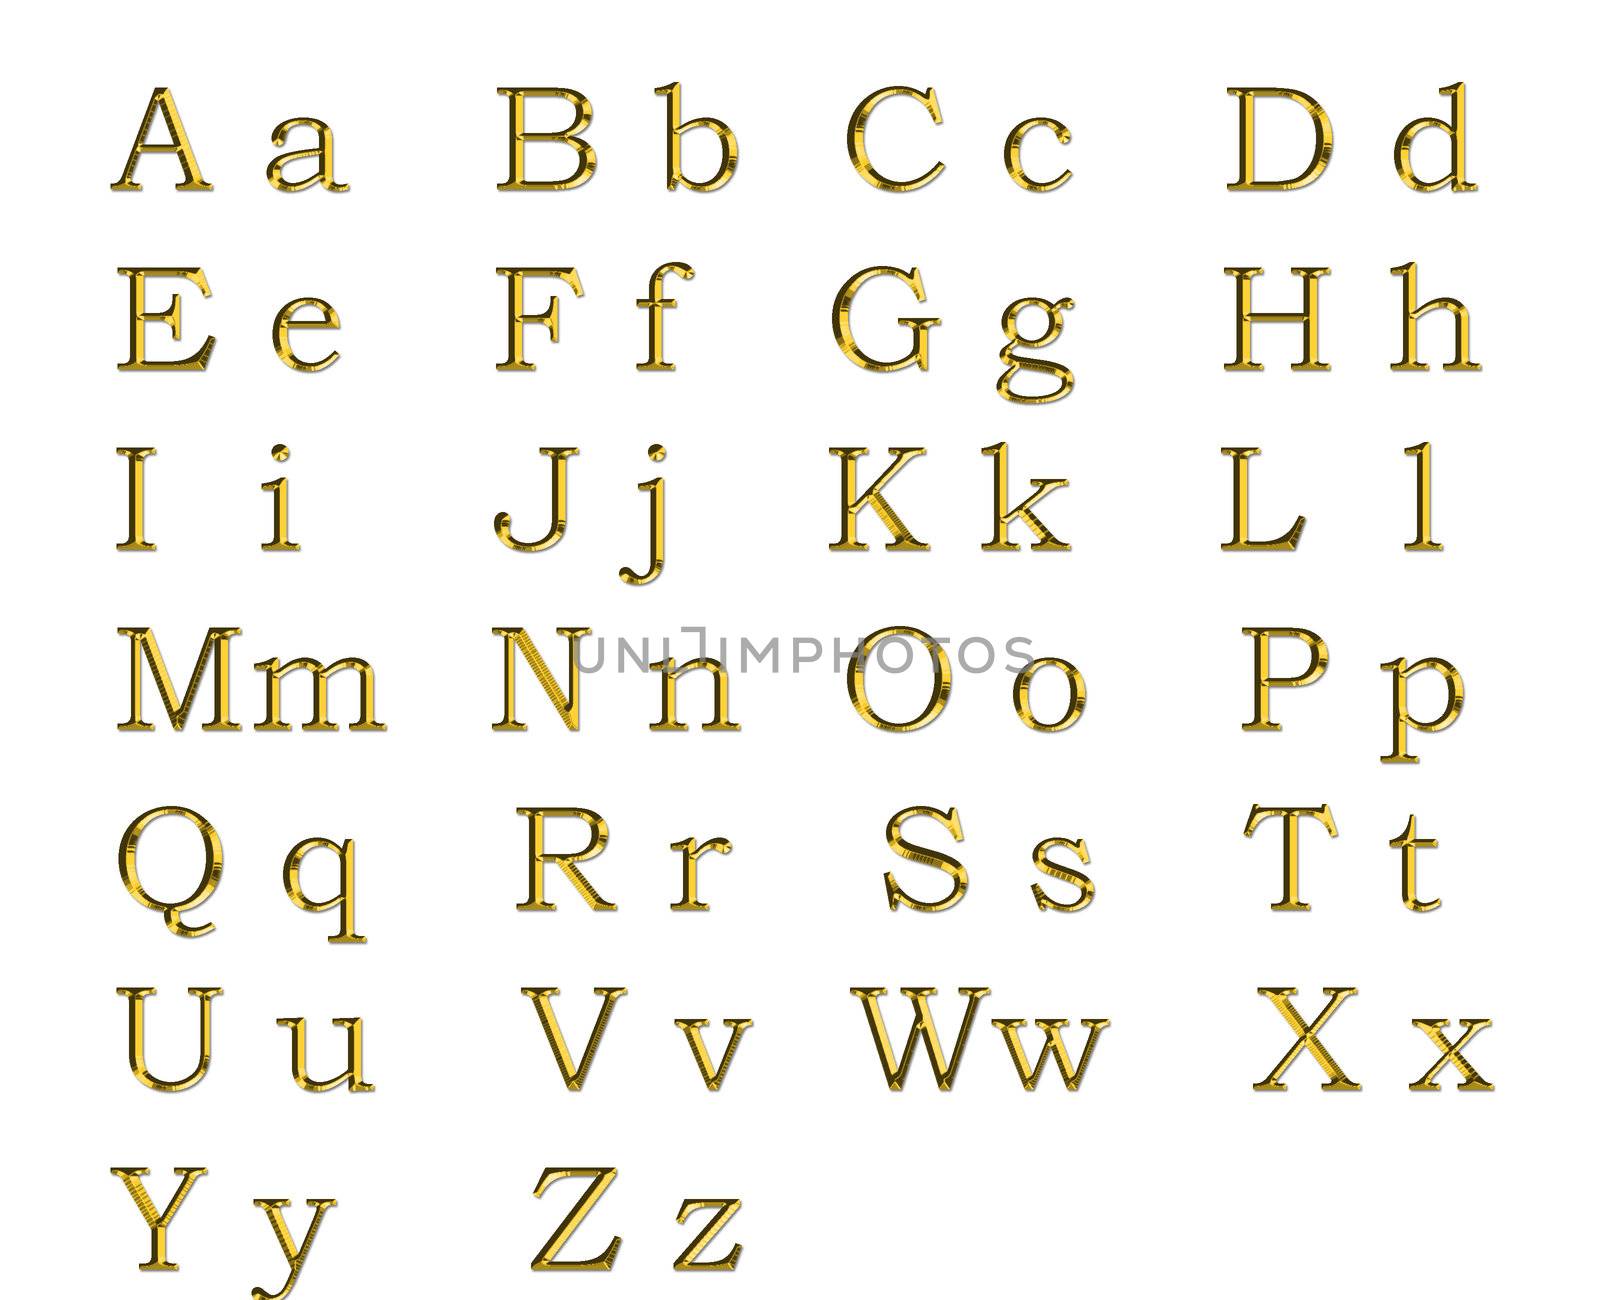 Golden alphabet by Dddaca